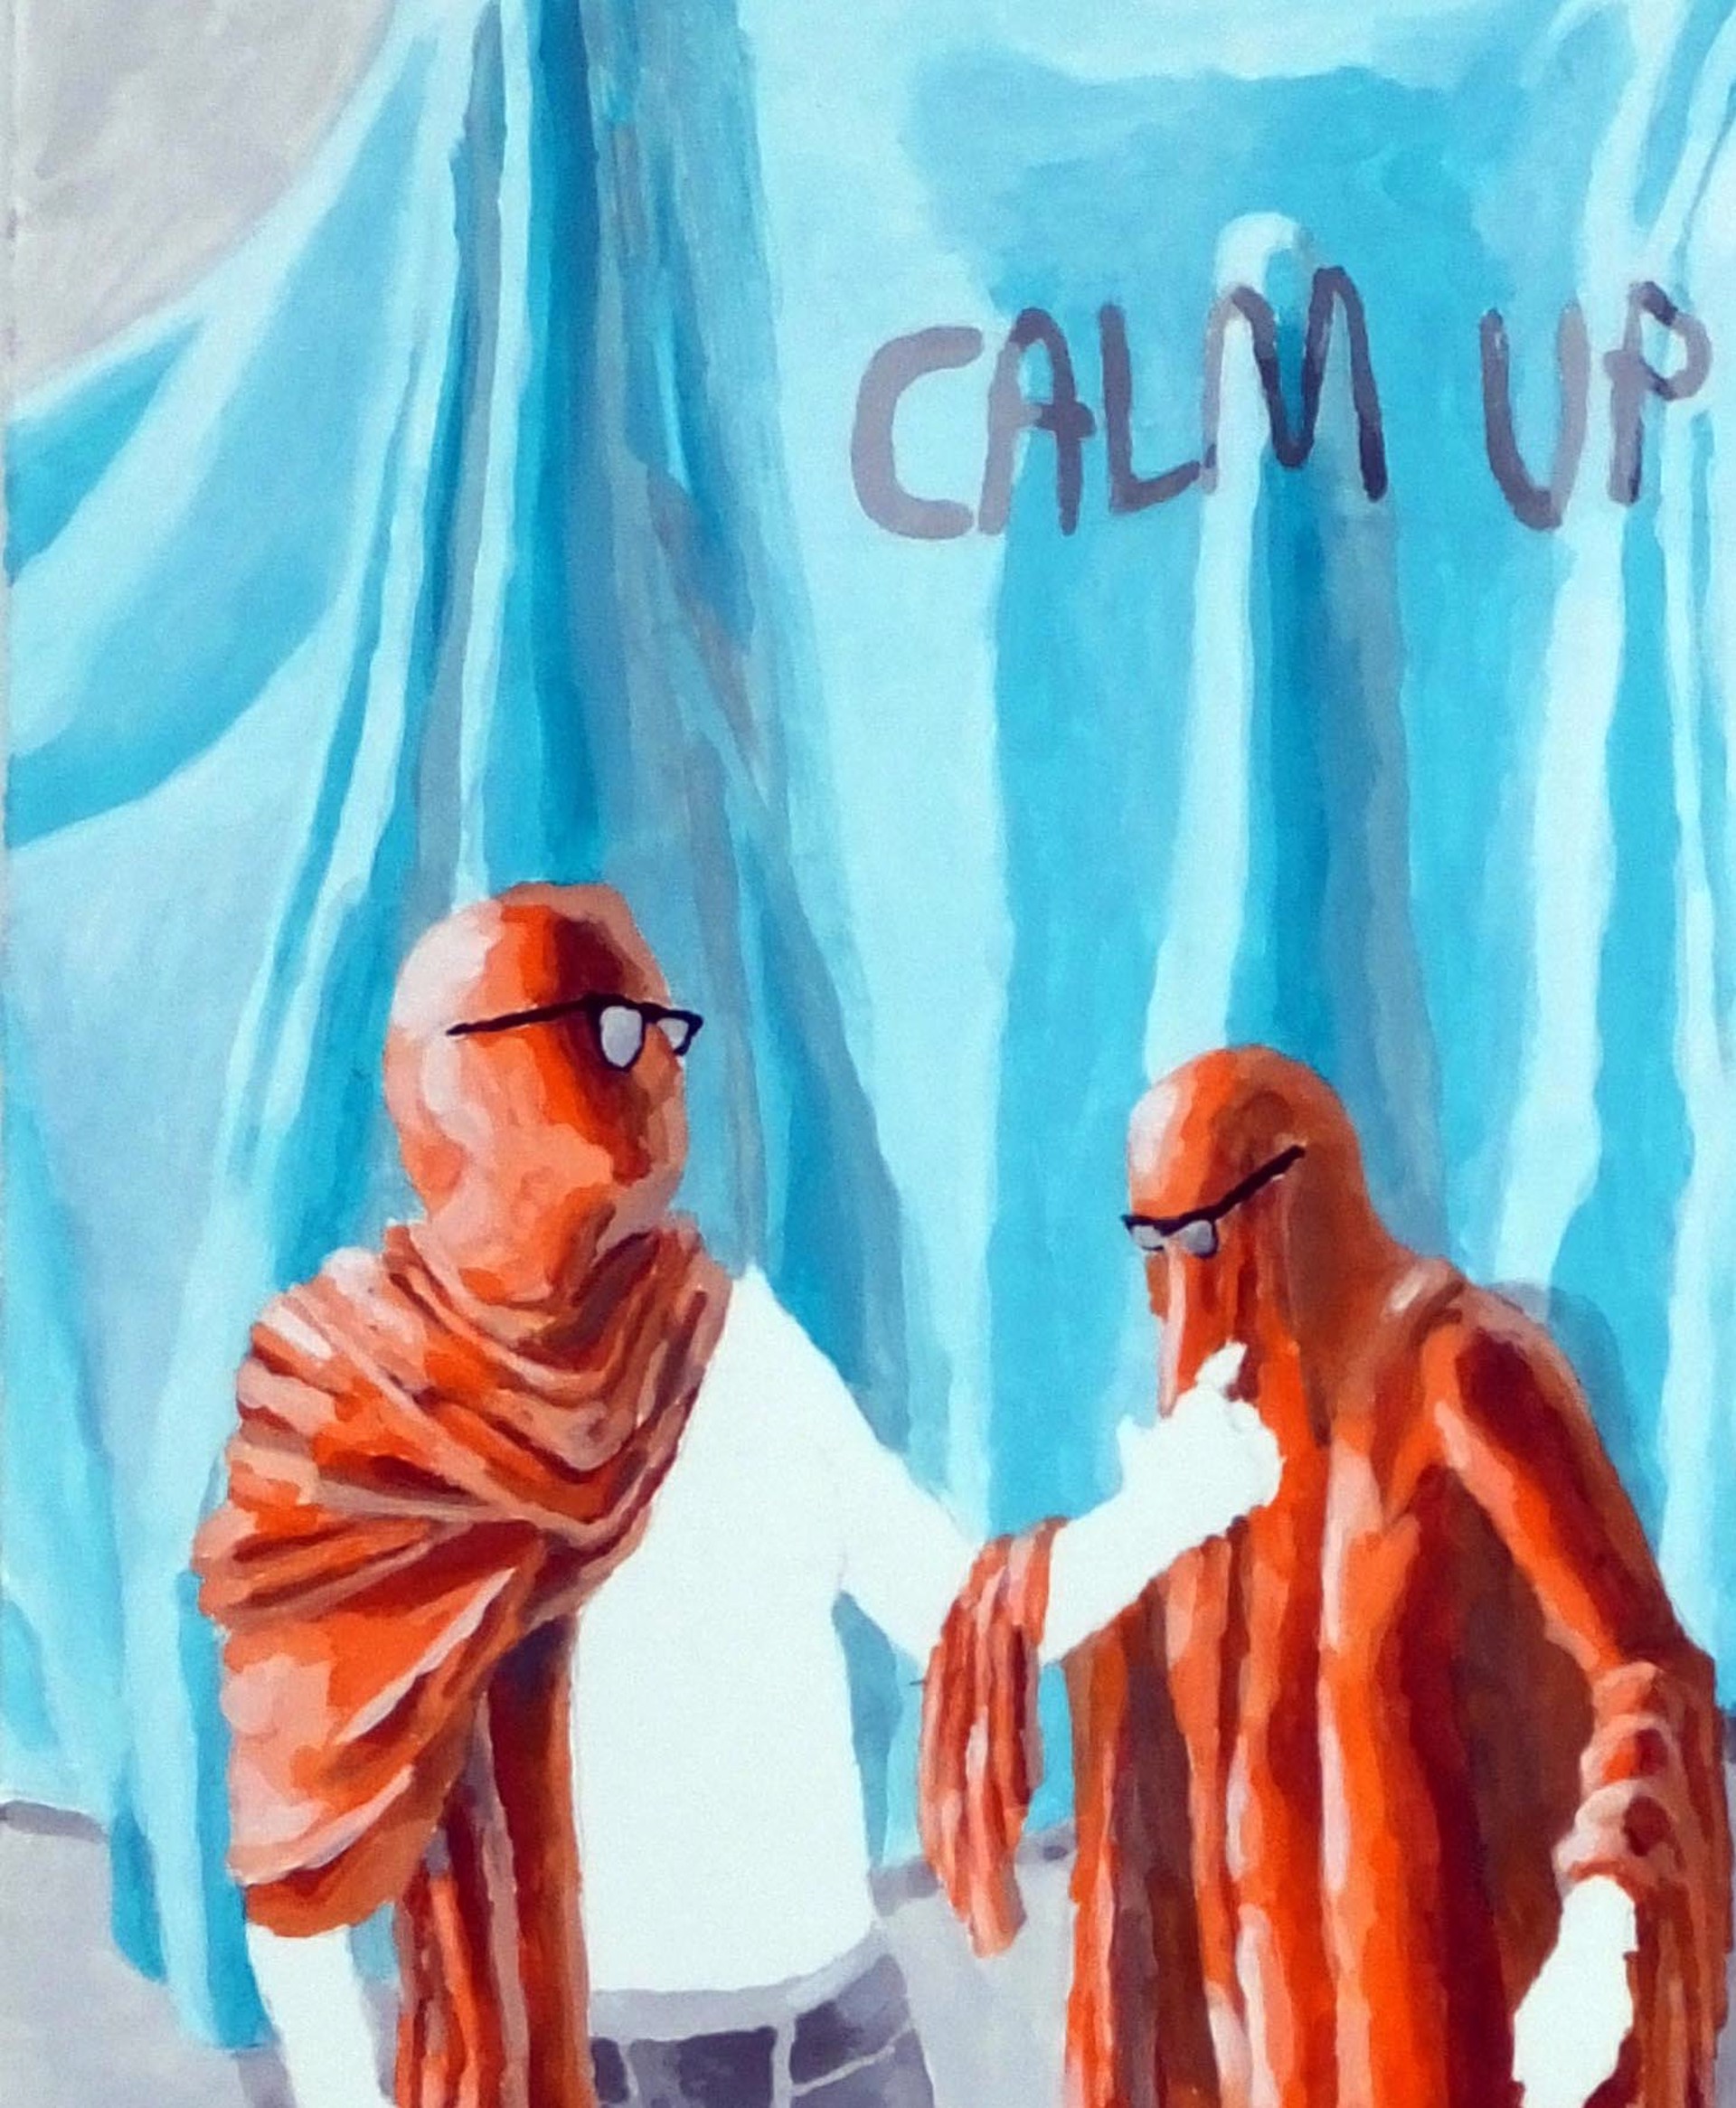 Calm Up Clam Down by Brian Spolans